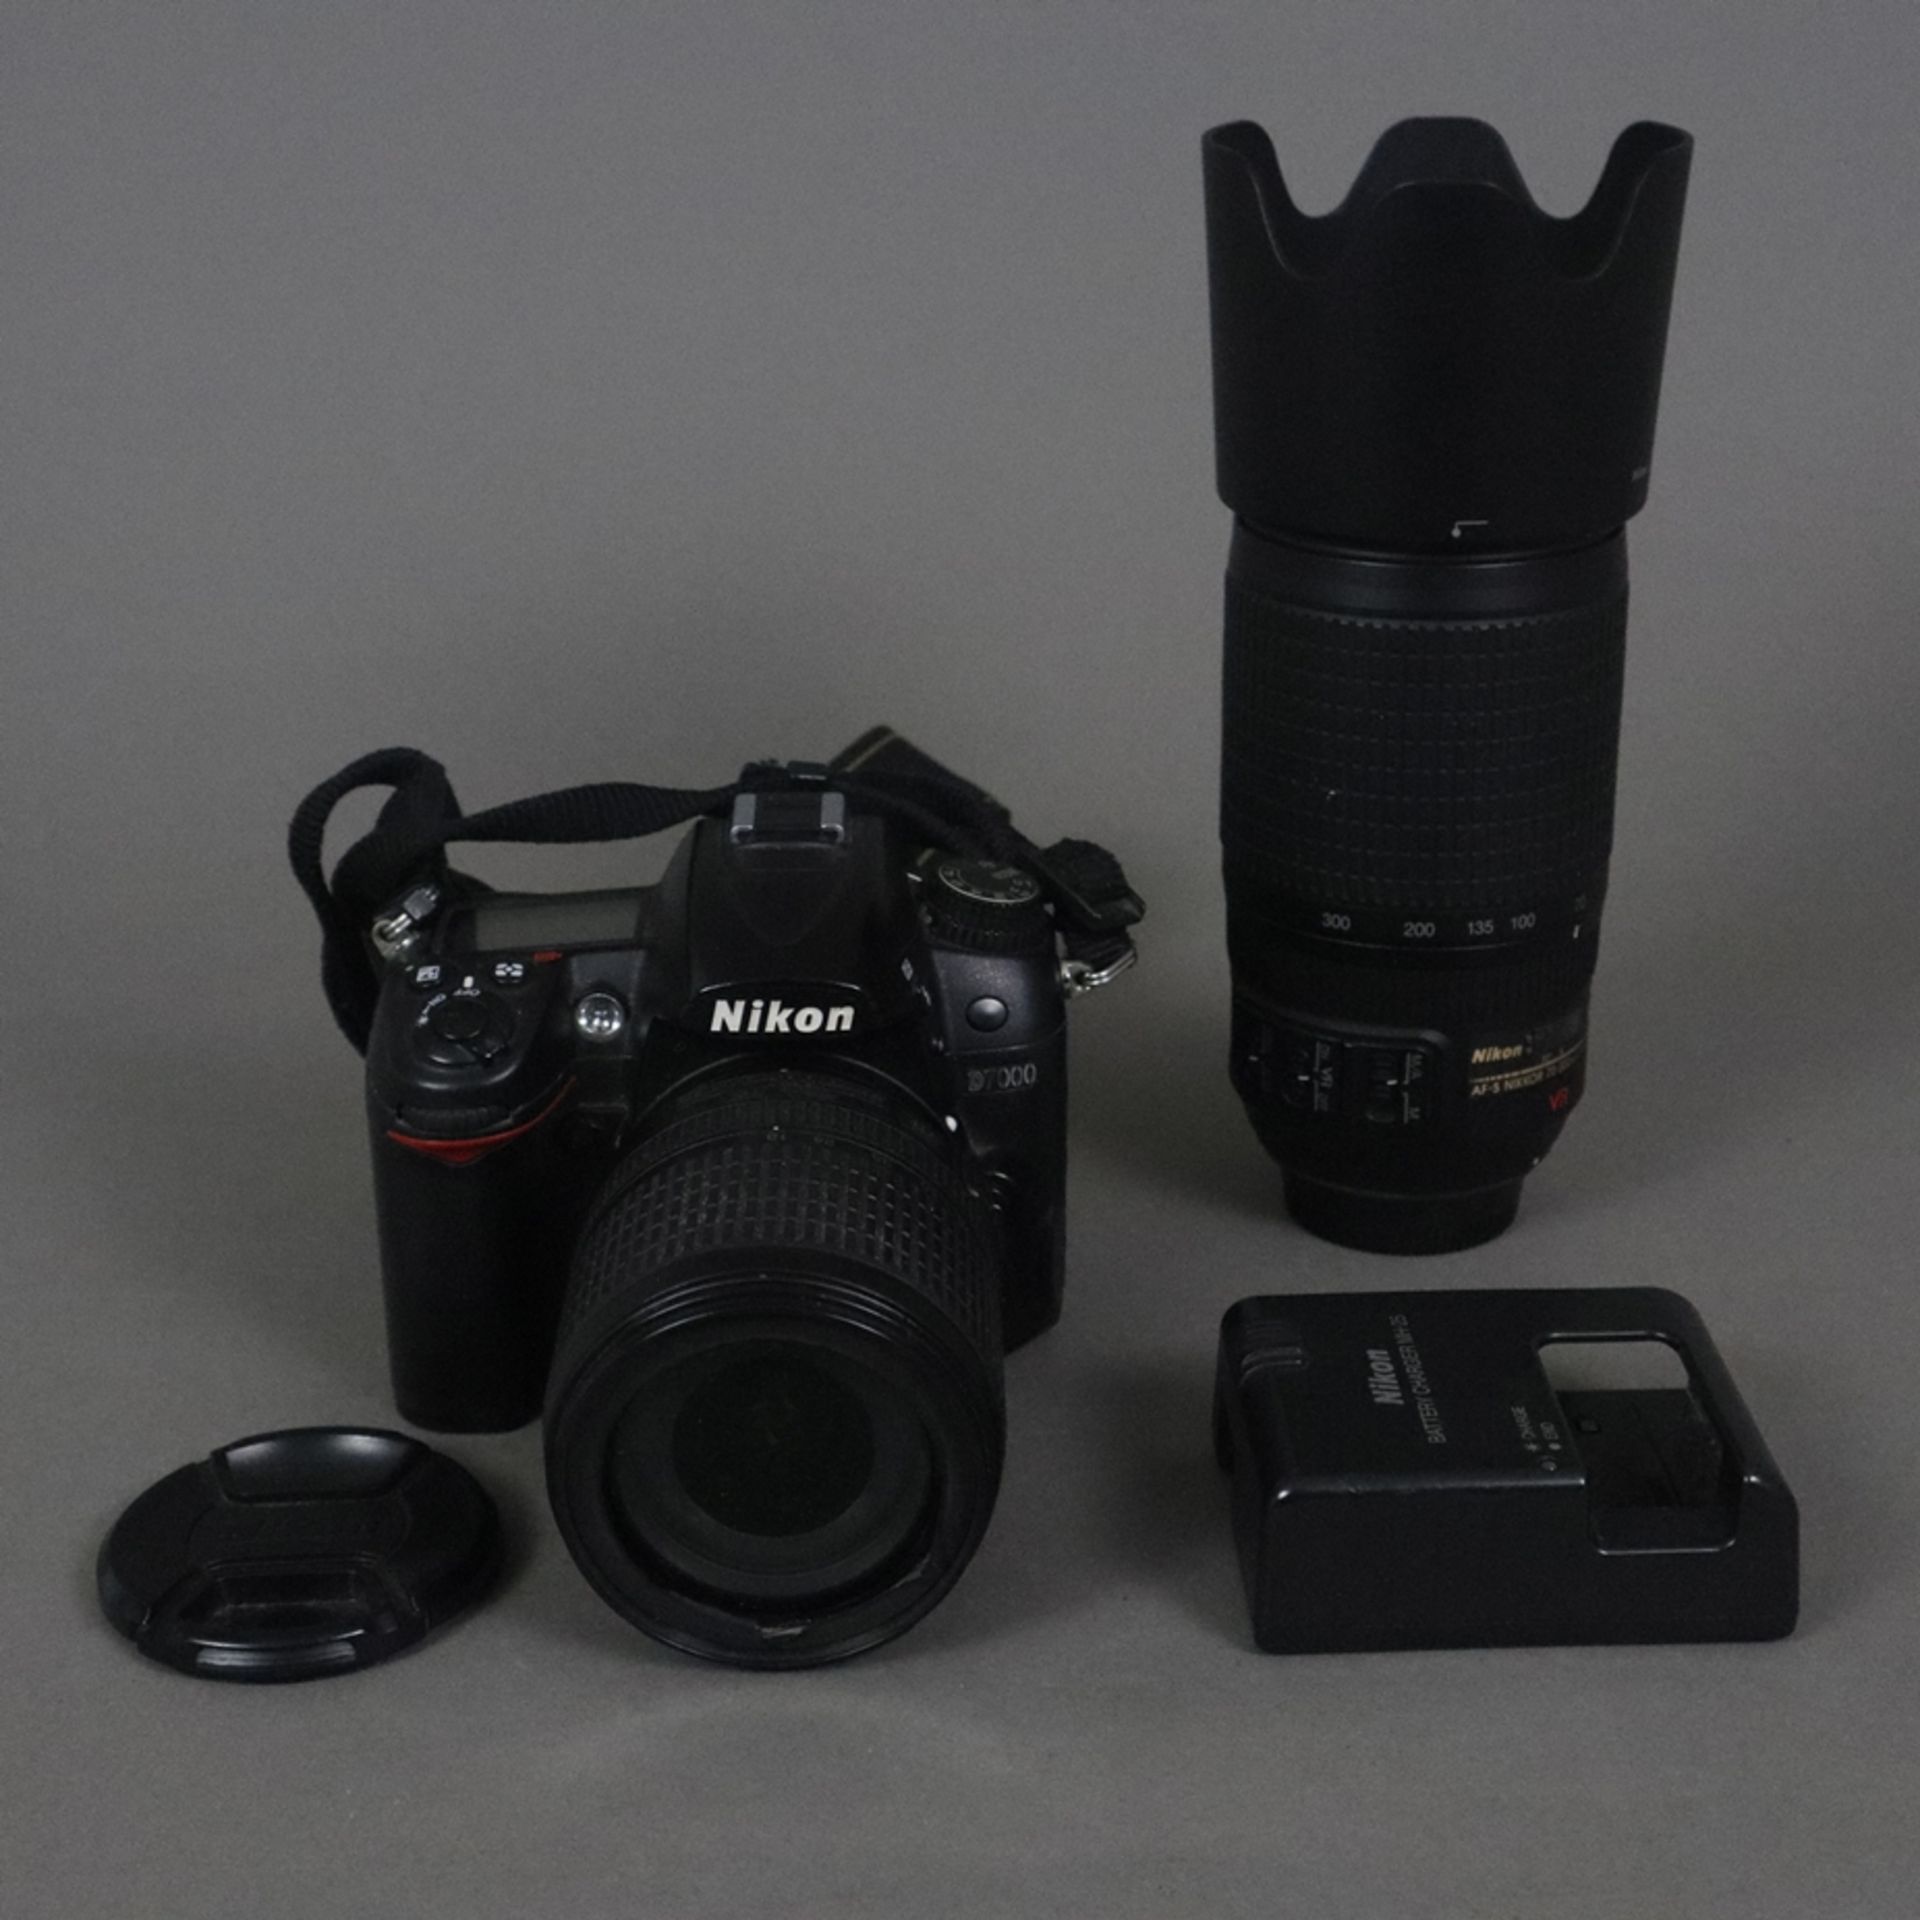 Nikon D7000 SLR-Digitalkamera - 16 Megapixel, 39 AF-Punkte, LiveView, Full-HD-Video, mit Objektiven